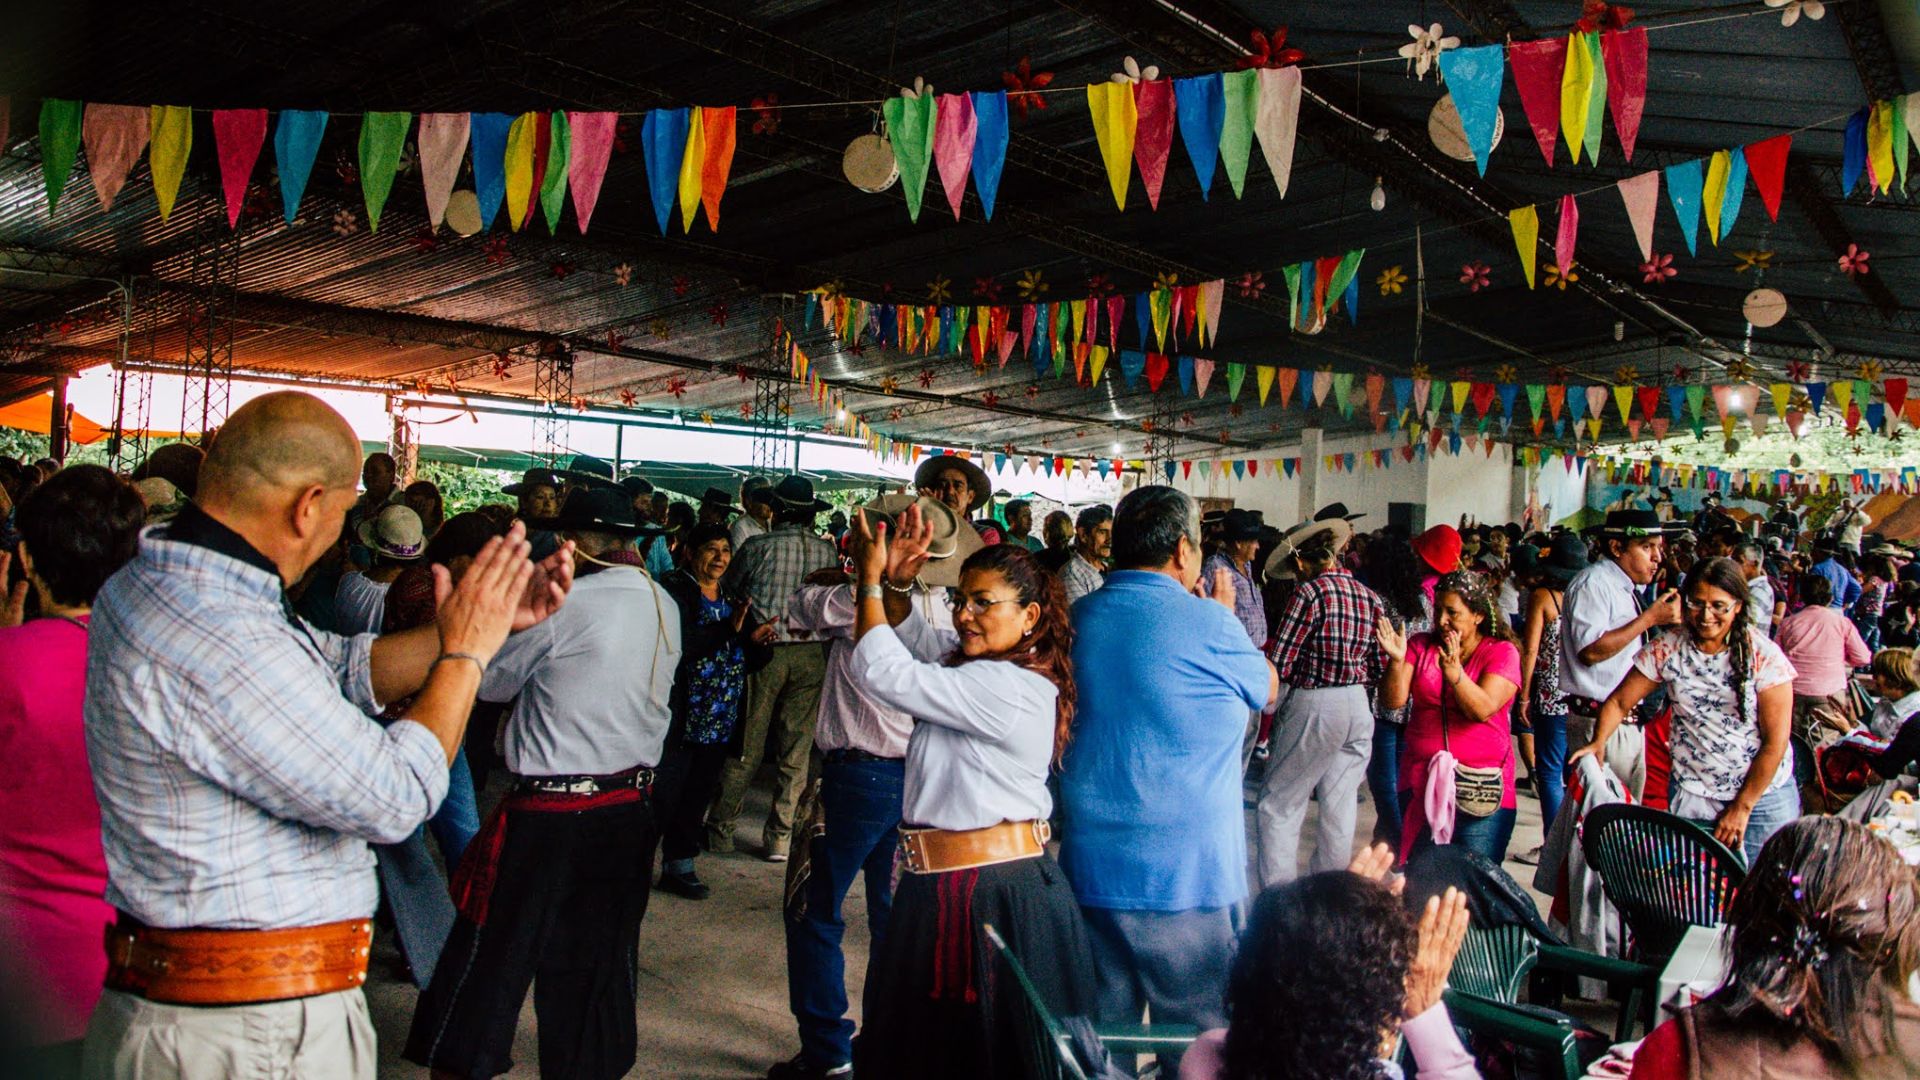 Los centros comunitarios representan uno de los puntos de encuentros durante el Carnaval en Salta (Ministerio de Turismo y Deportes de la Nación)